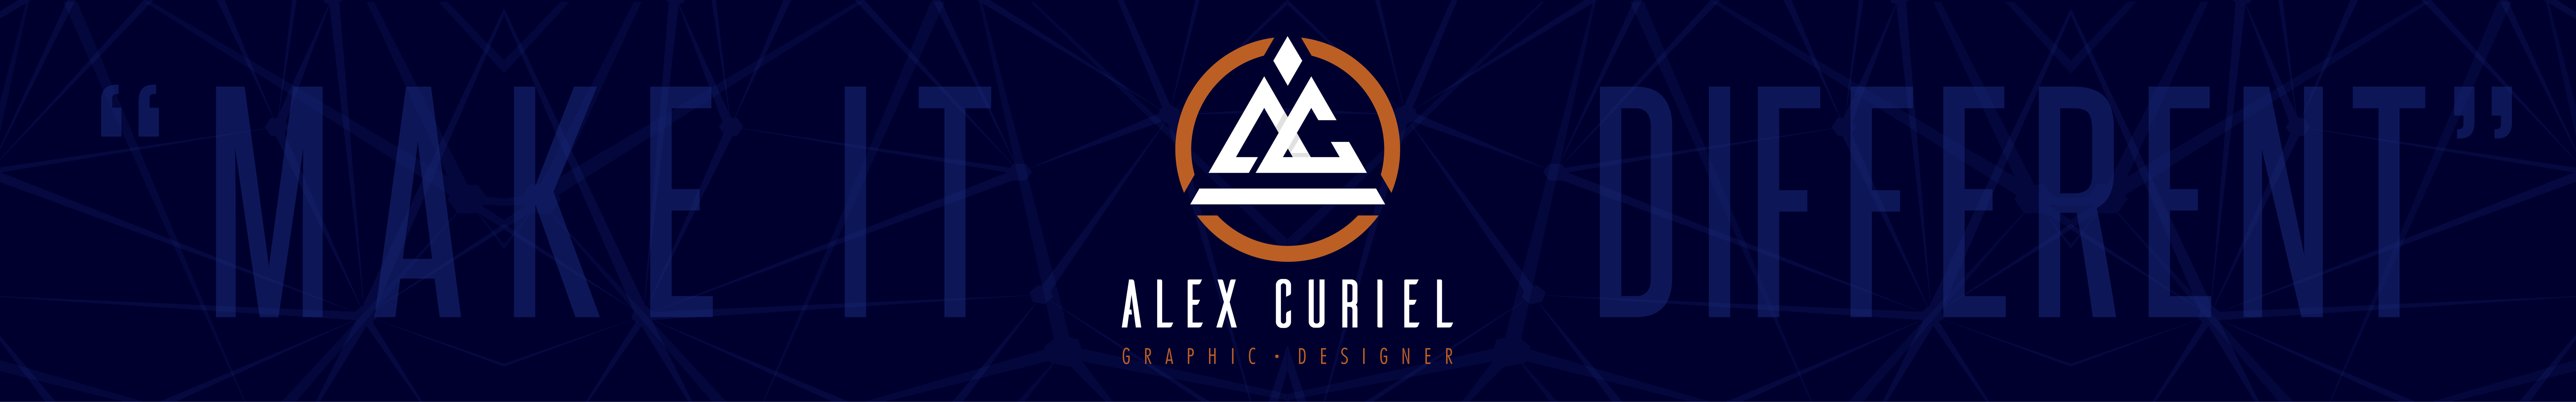 Alex Curiel's profile banner